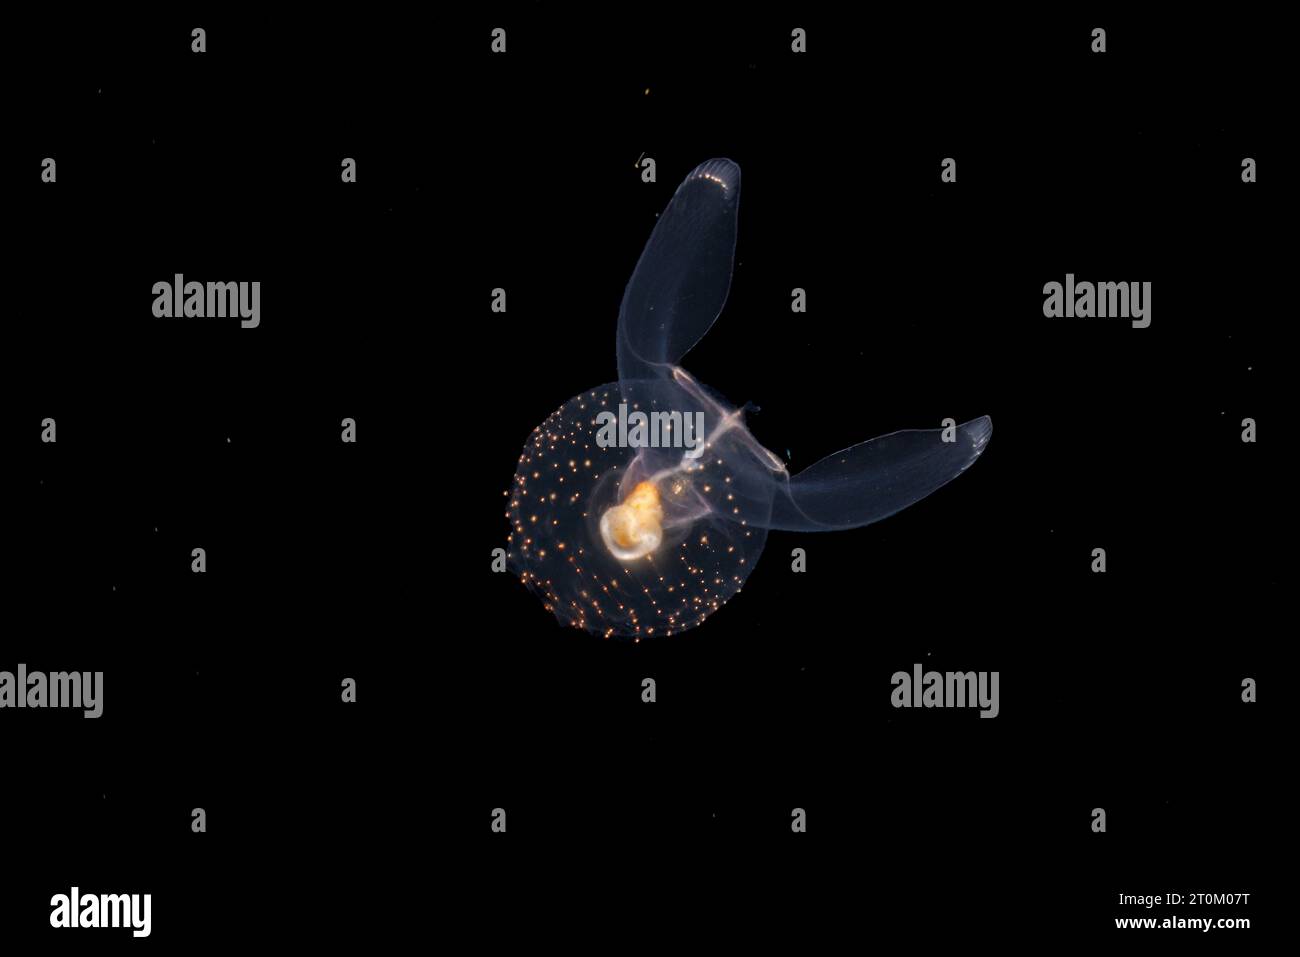 Gymnosomata, bekannt als Seengel, sind pelagische Nacktschnecken. Sie sind fleischfressende Fresser, die andere Pteropoden fressen. Fotografiert in der Nacht, 40 Meter tief auf einem Bla Stockfoto